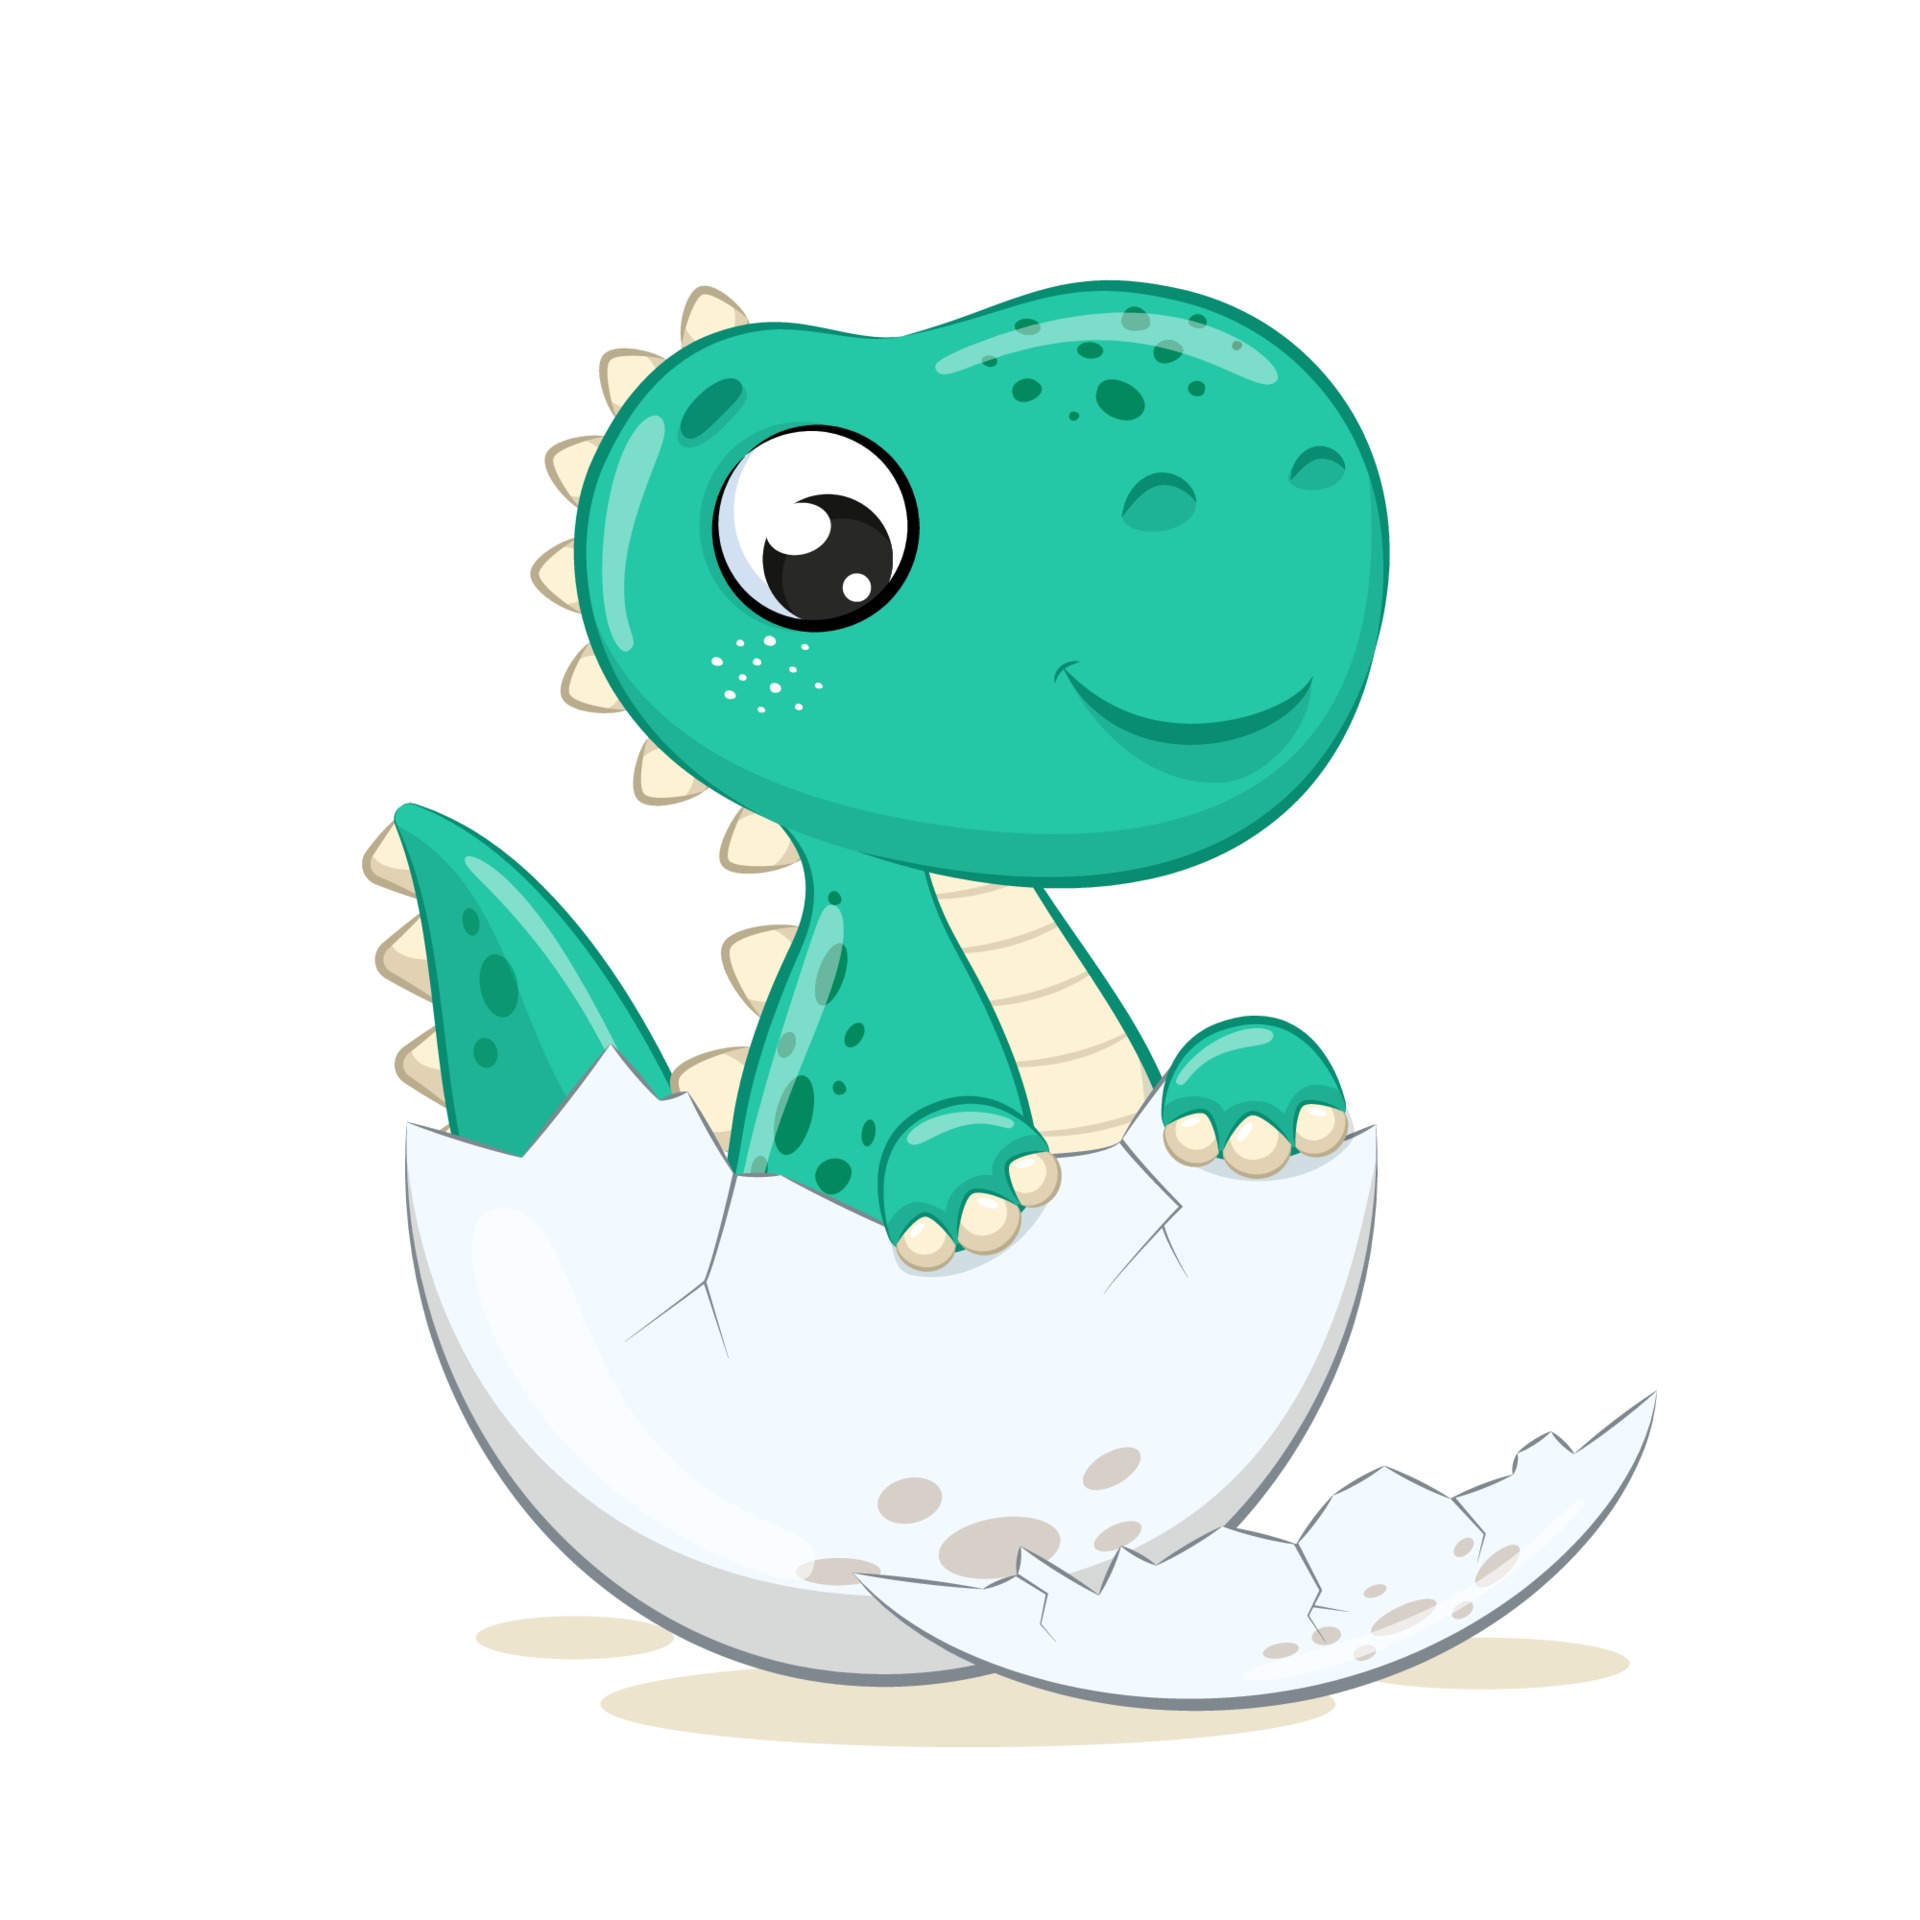 Cute baby dinosaur illustration. Vector cartoon illustration. 3242217  Vector Art at Vecteezy